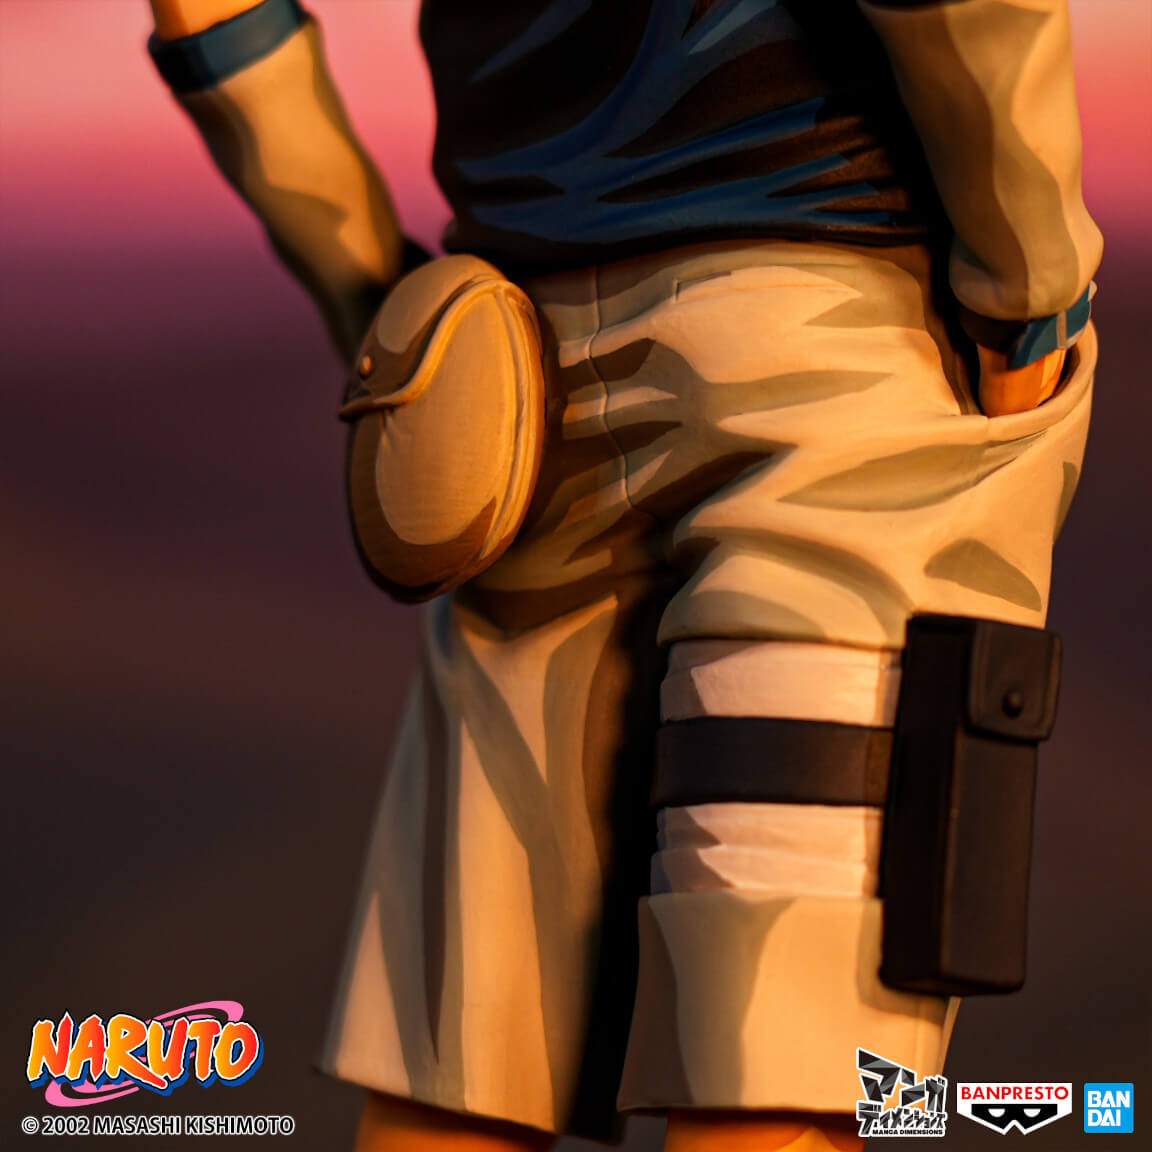 Naruto Grandista Uchiha Sasuke#2 [Manga Dimensions]